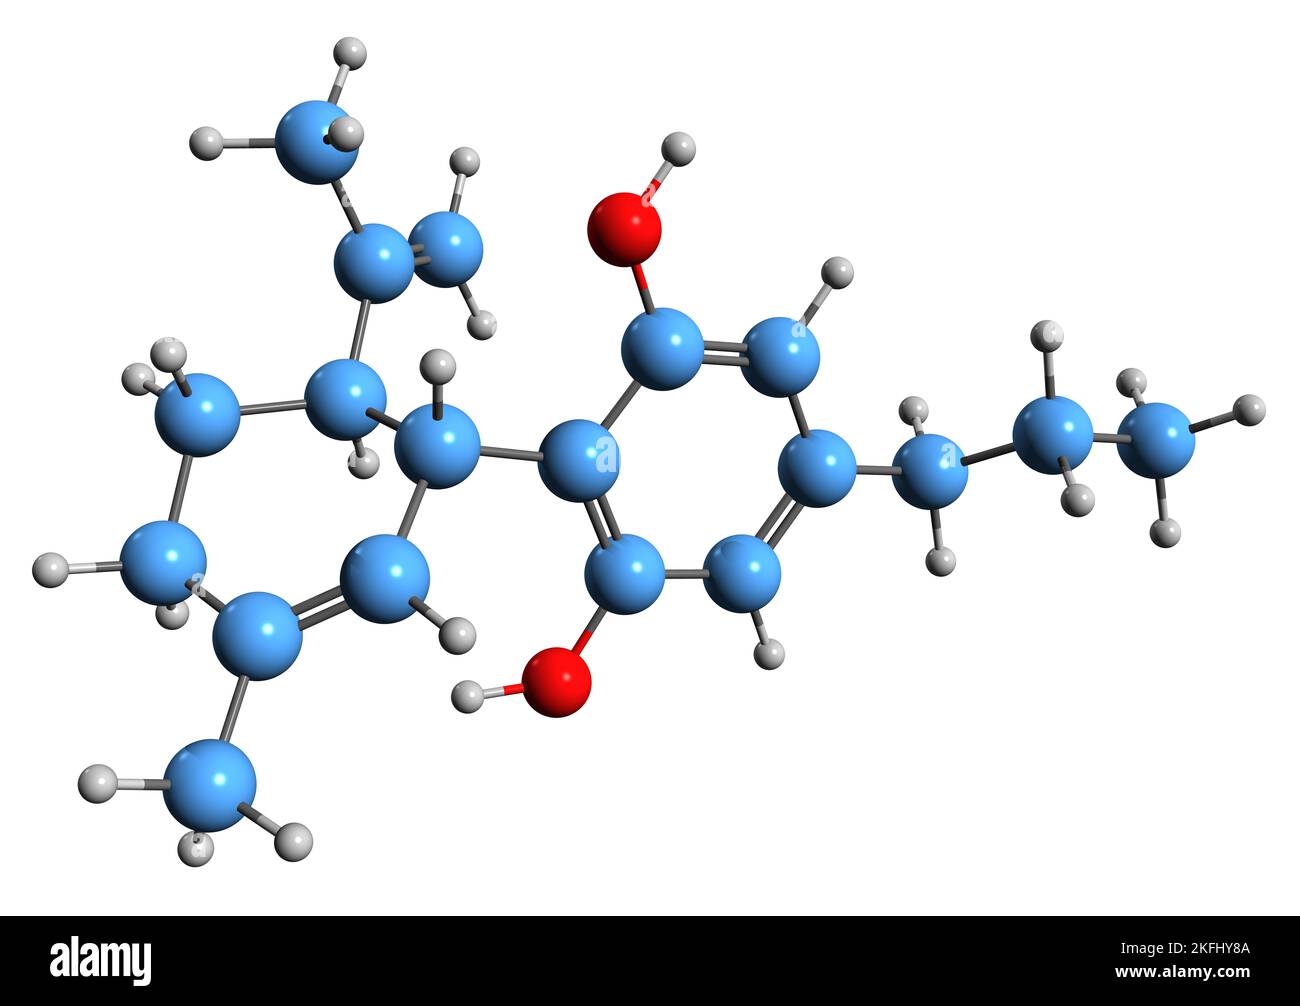 3D image de la formule squelettique de la cannabidivarin - structure chimique moléculaire du cannabinoïde non psychoactif isolé sur fond blanc Banque D'Images